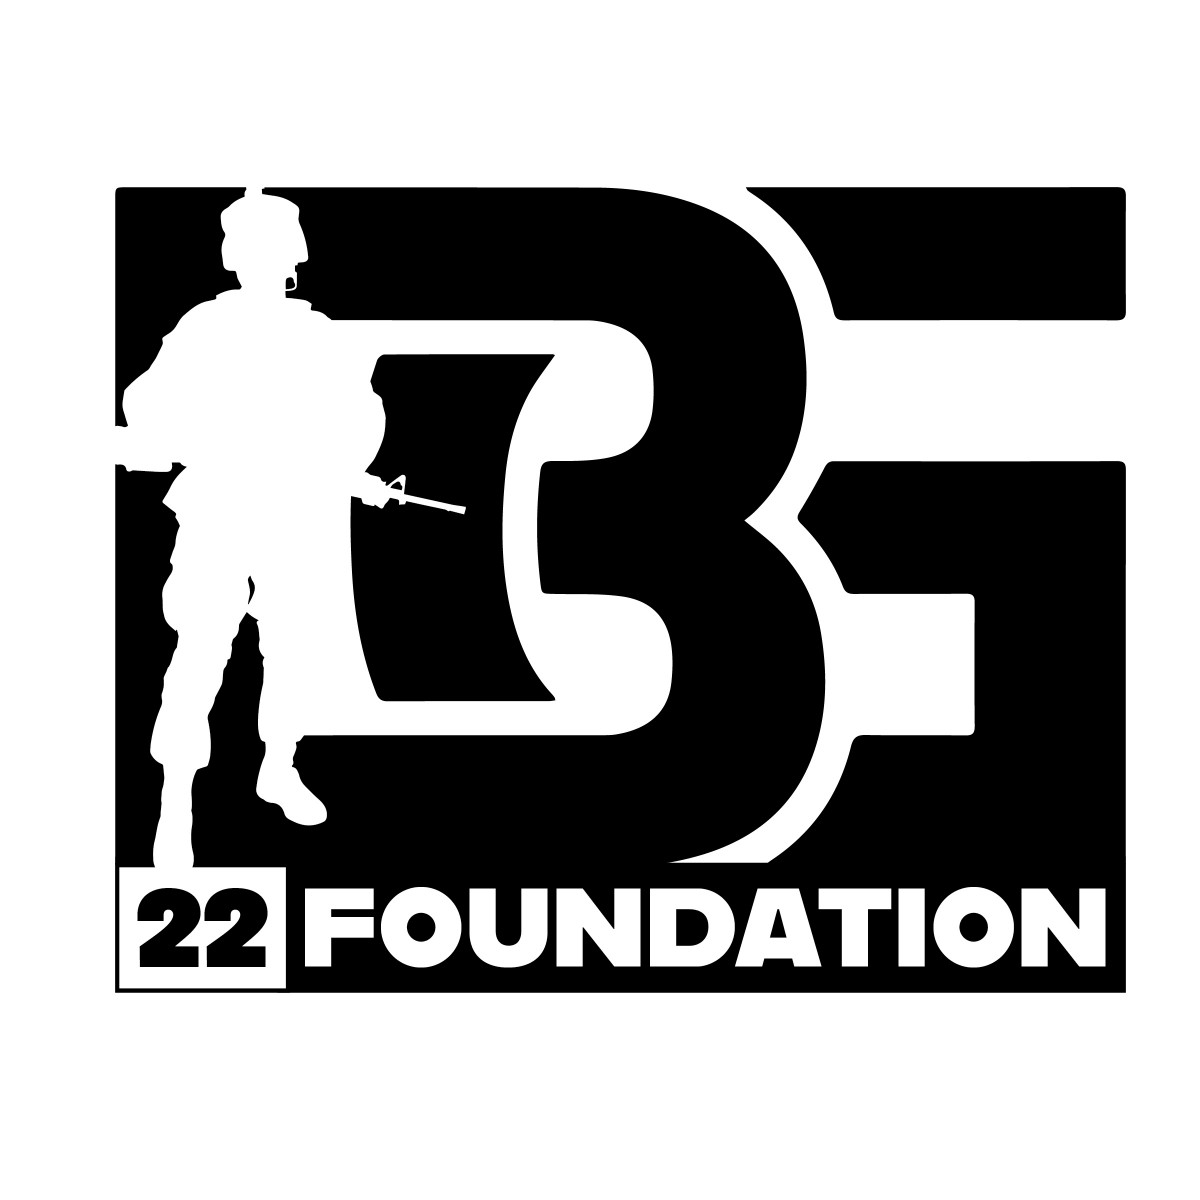 Battle Ground 22 Foundation